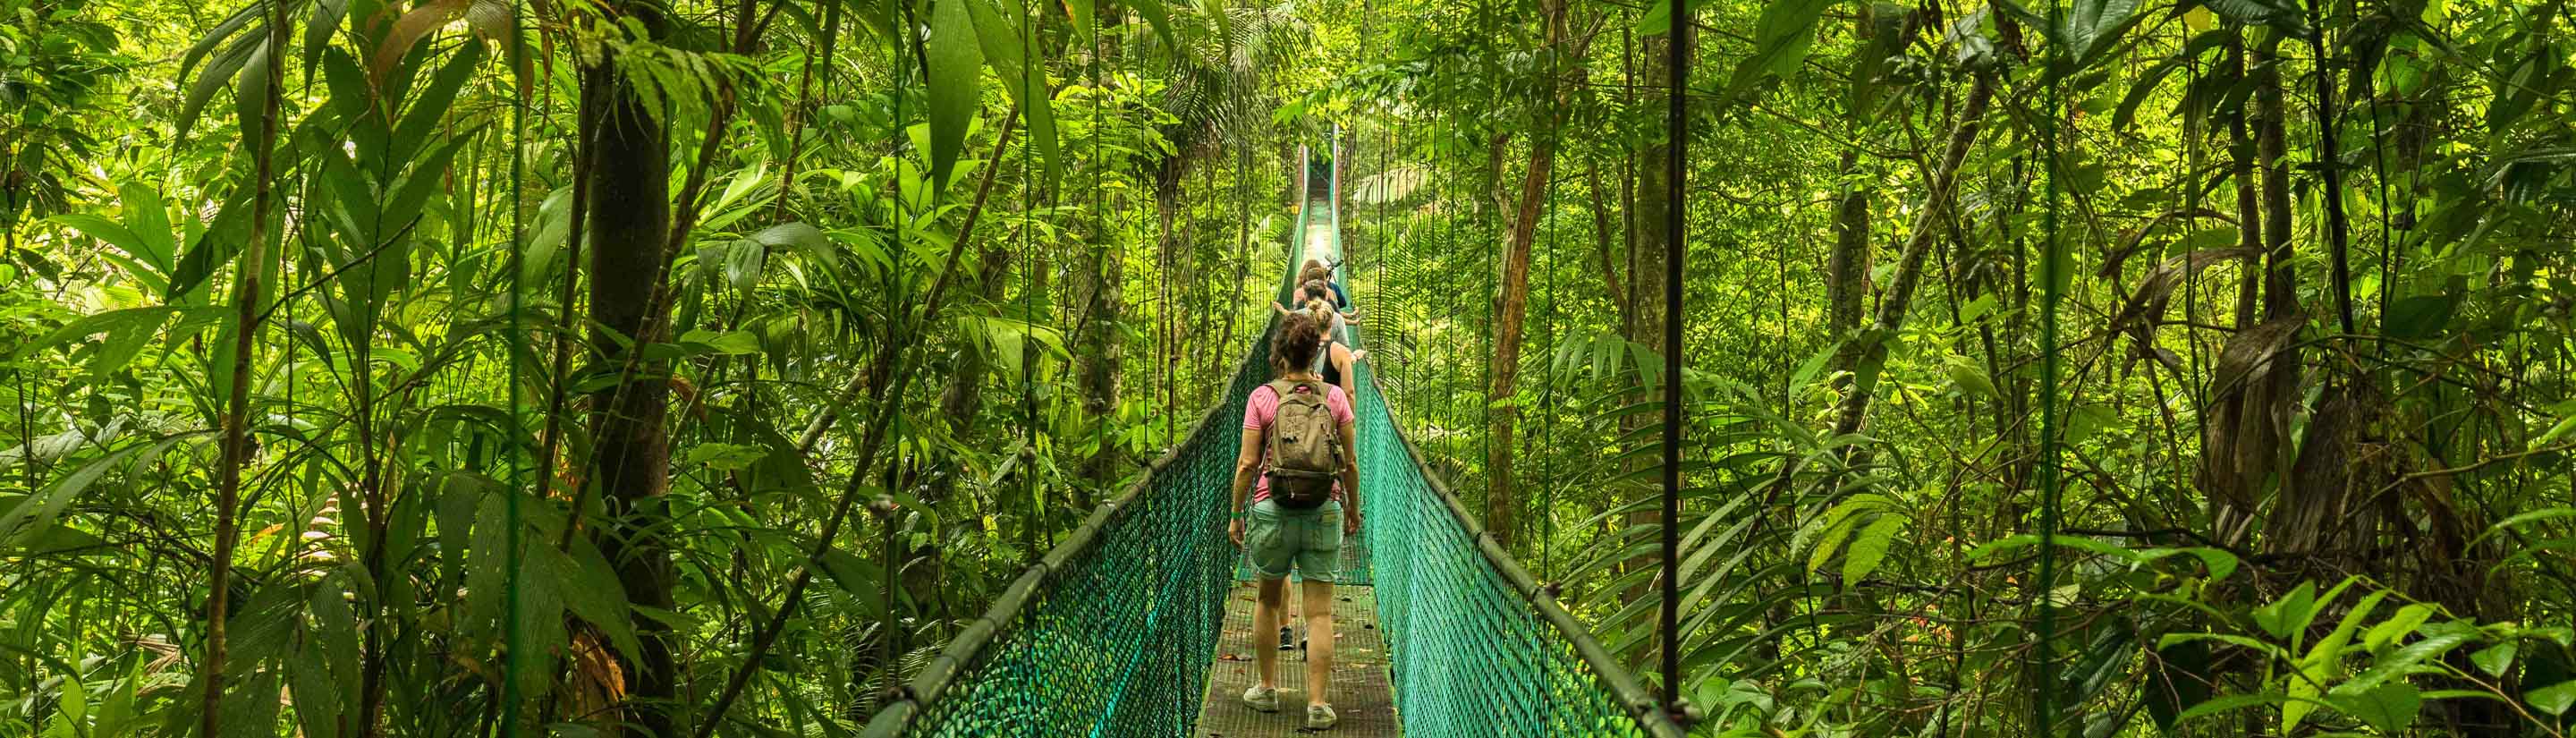 Eine Costa Rica-Reise ins Paradies